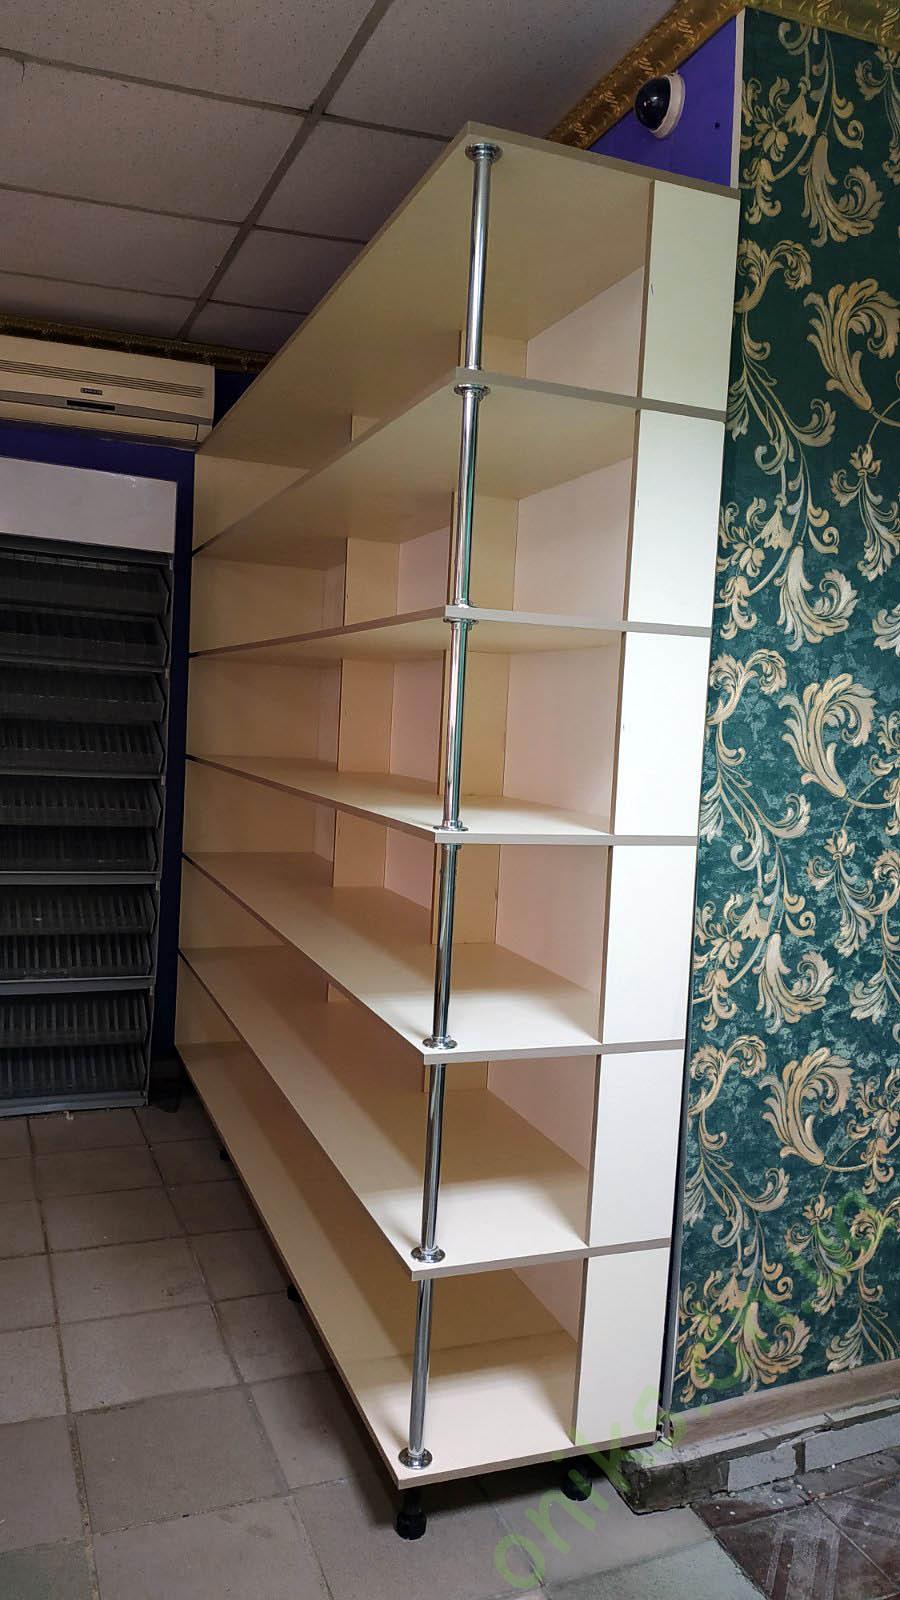 Купить шкаф - стеллаж открытый пристенный в Донецке